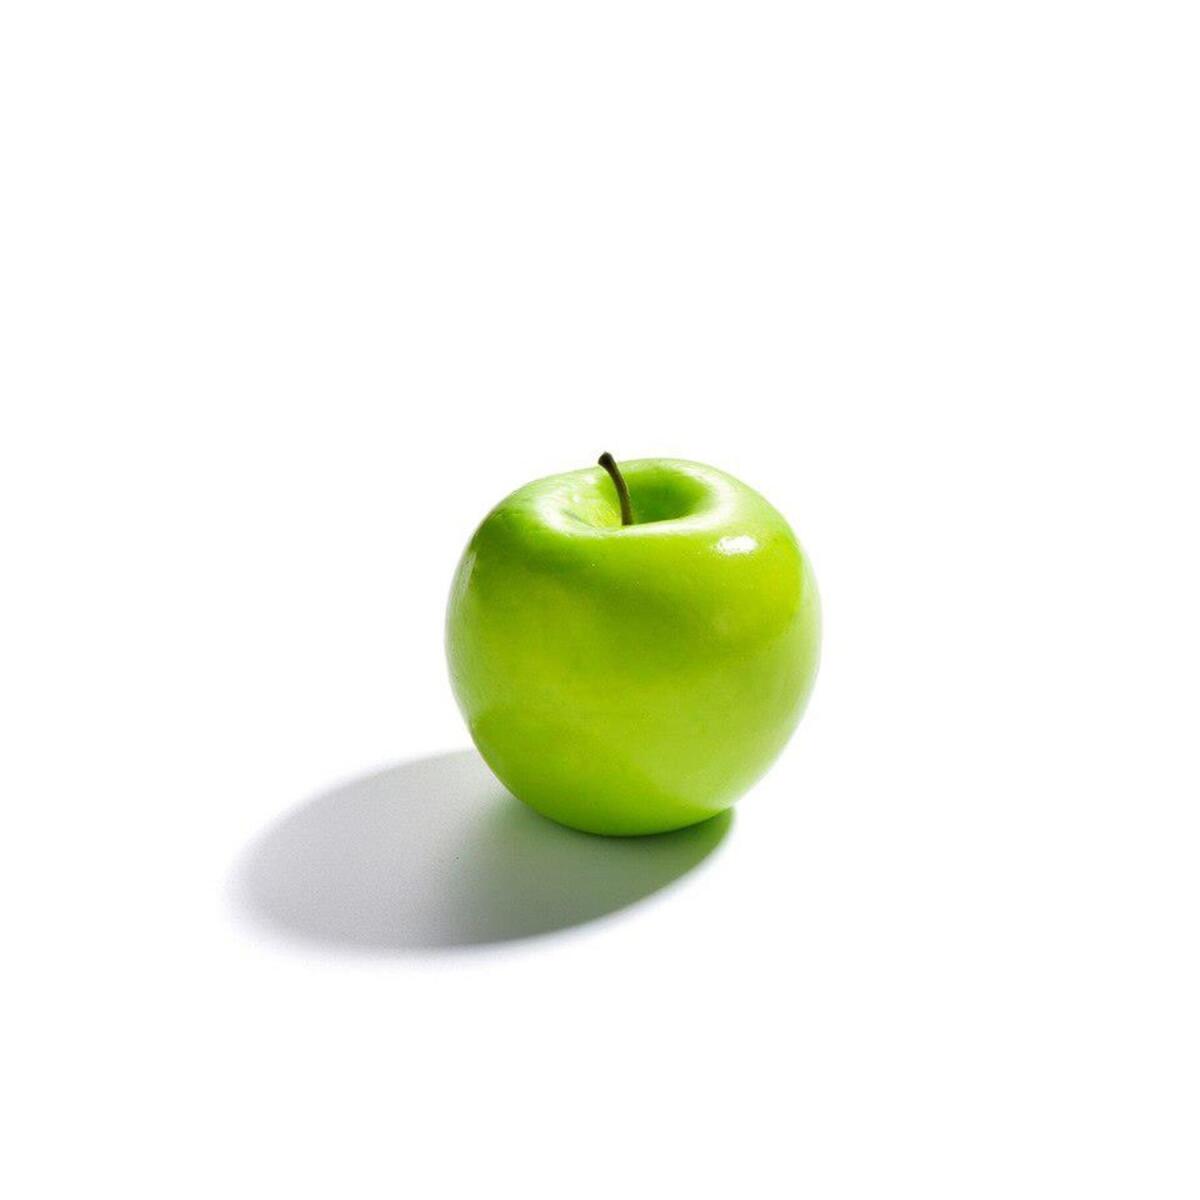 Yapay Meyve Sebze Yeşil Elma Aşırı Doğal 1. Kalite